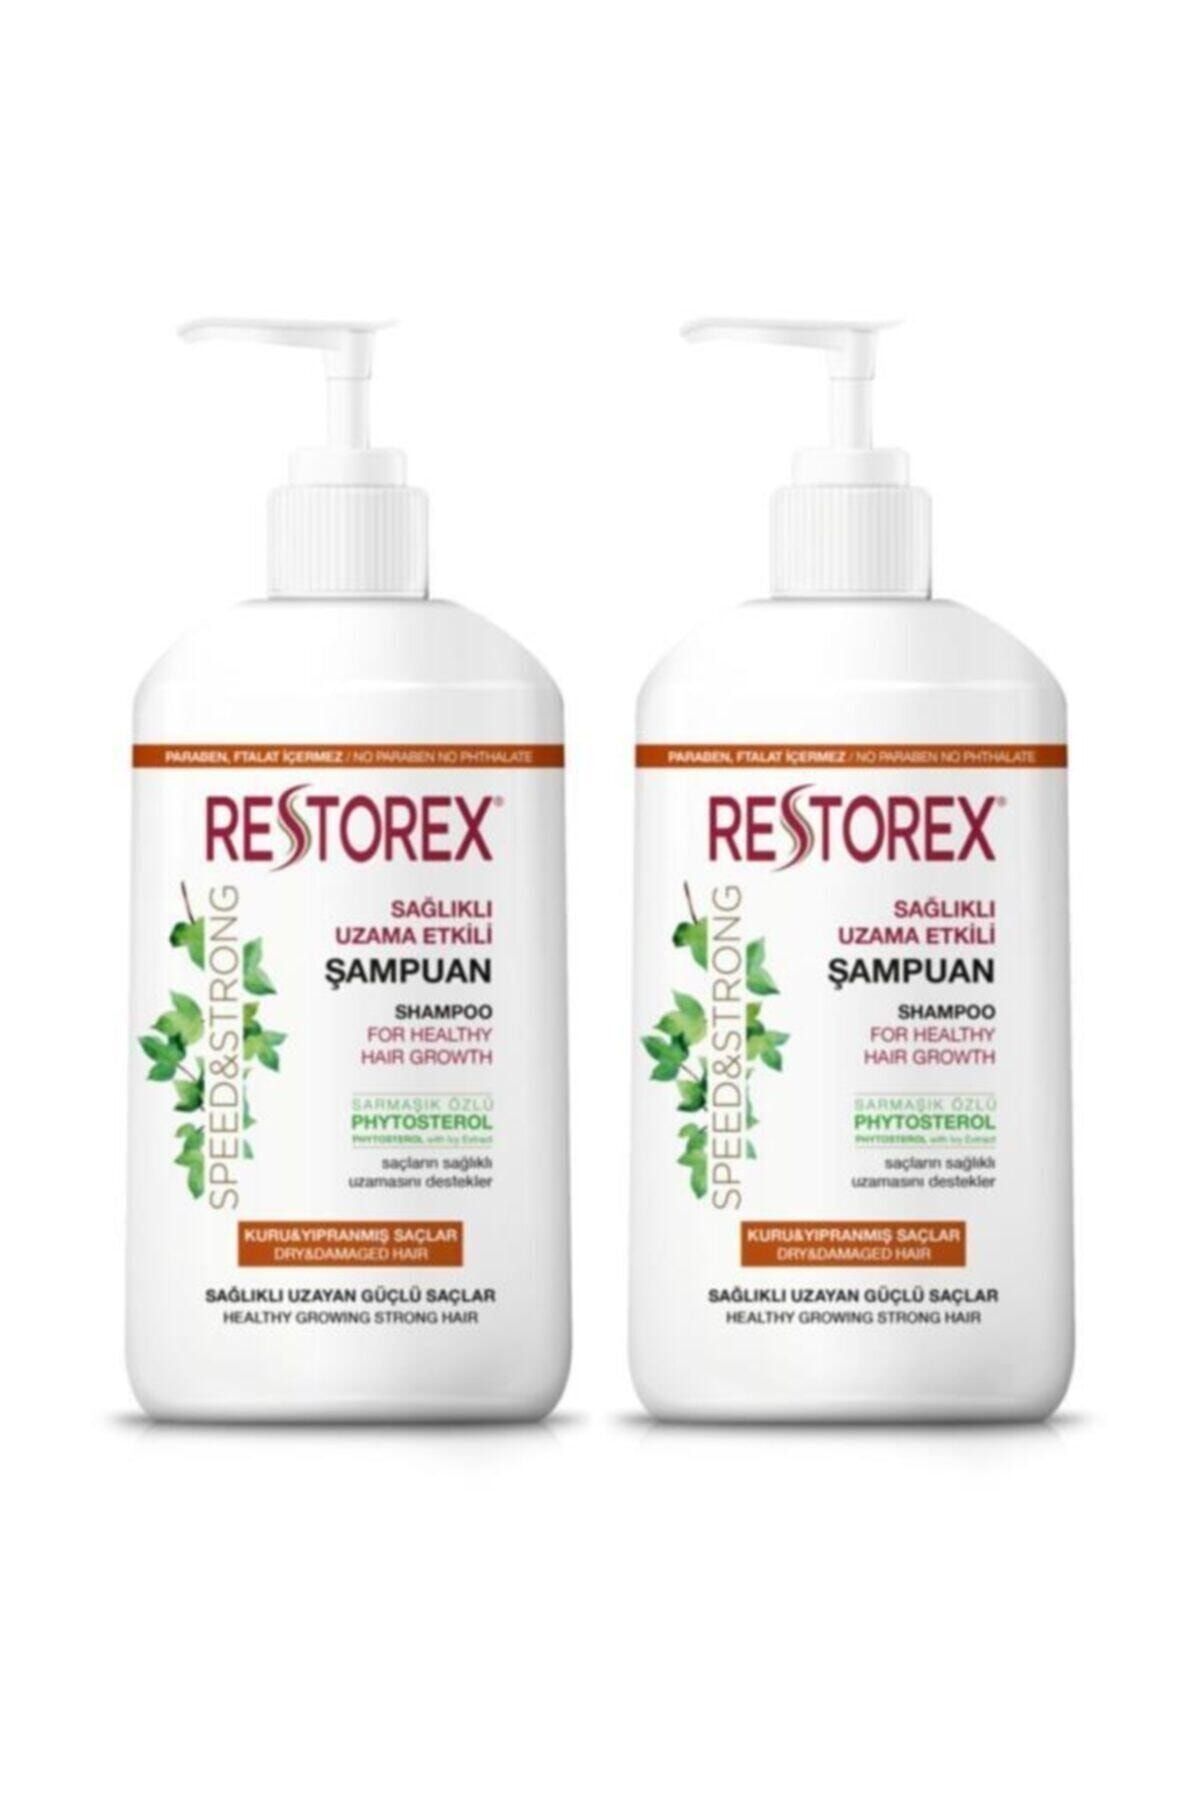 Restorex 2 Adet Şampuan Kuru Ve Yıpranmış Saçlar 1000 ml Sağlıklı Uzama Etkili 2rest_kuru